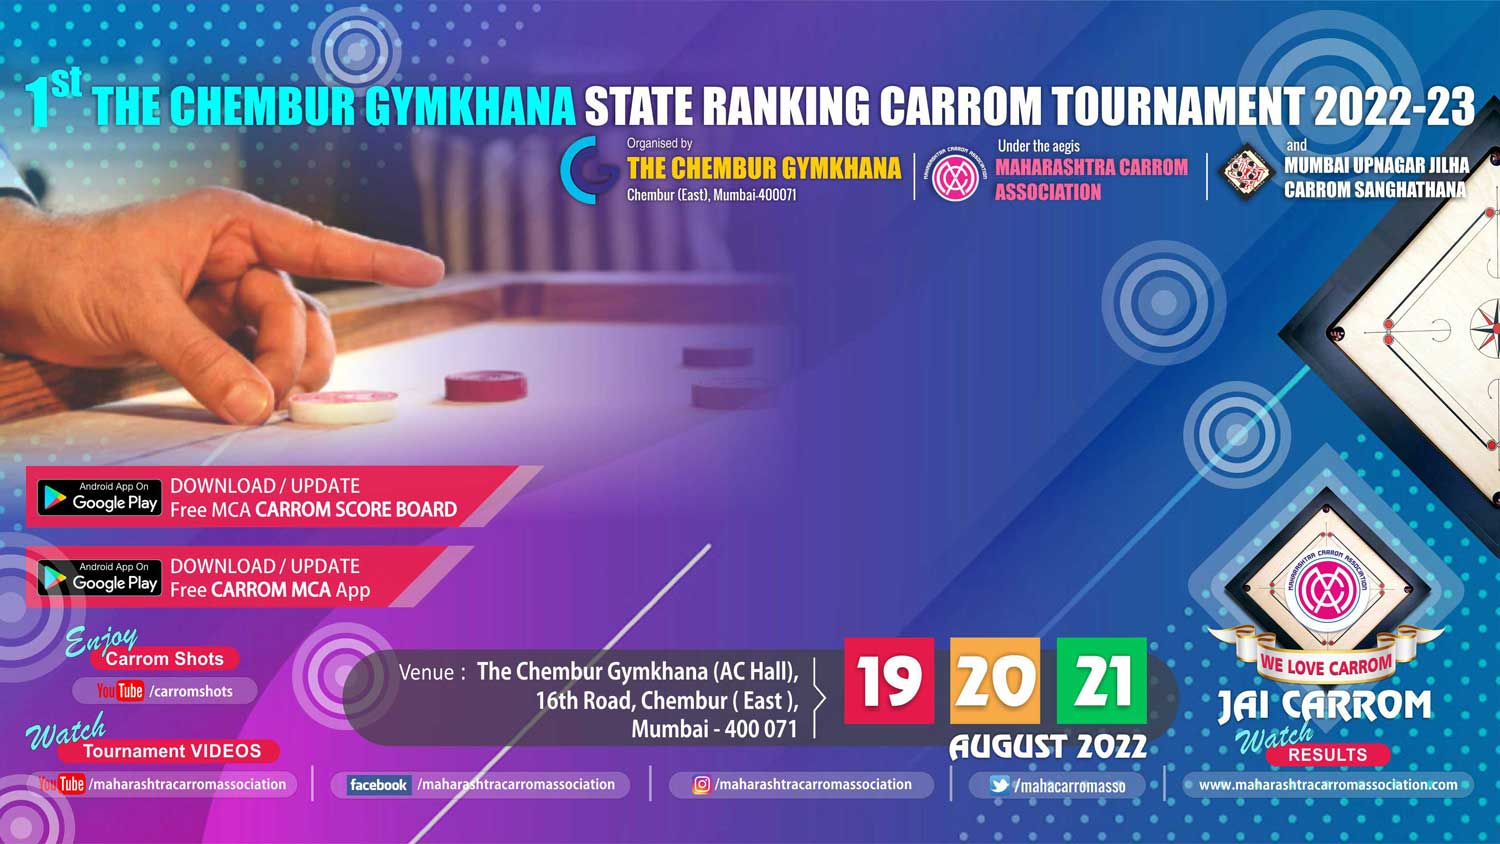 1st The Chembur Gymkhana Maharashtra State Ranking Carrom Tournament 2022-2023